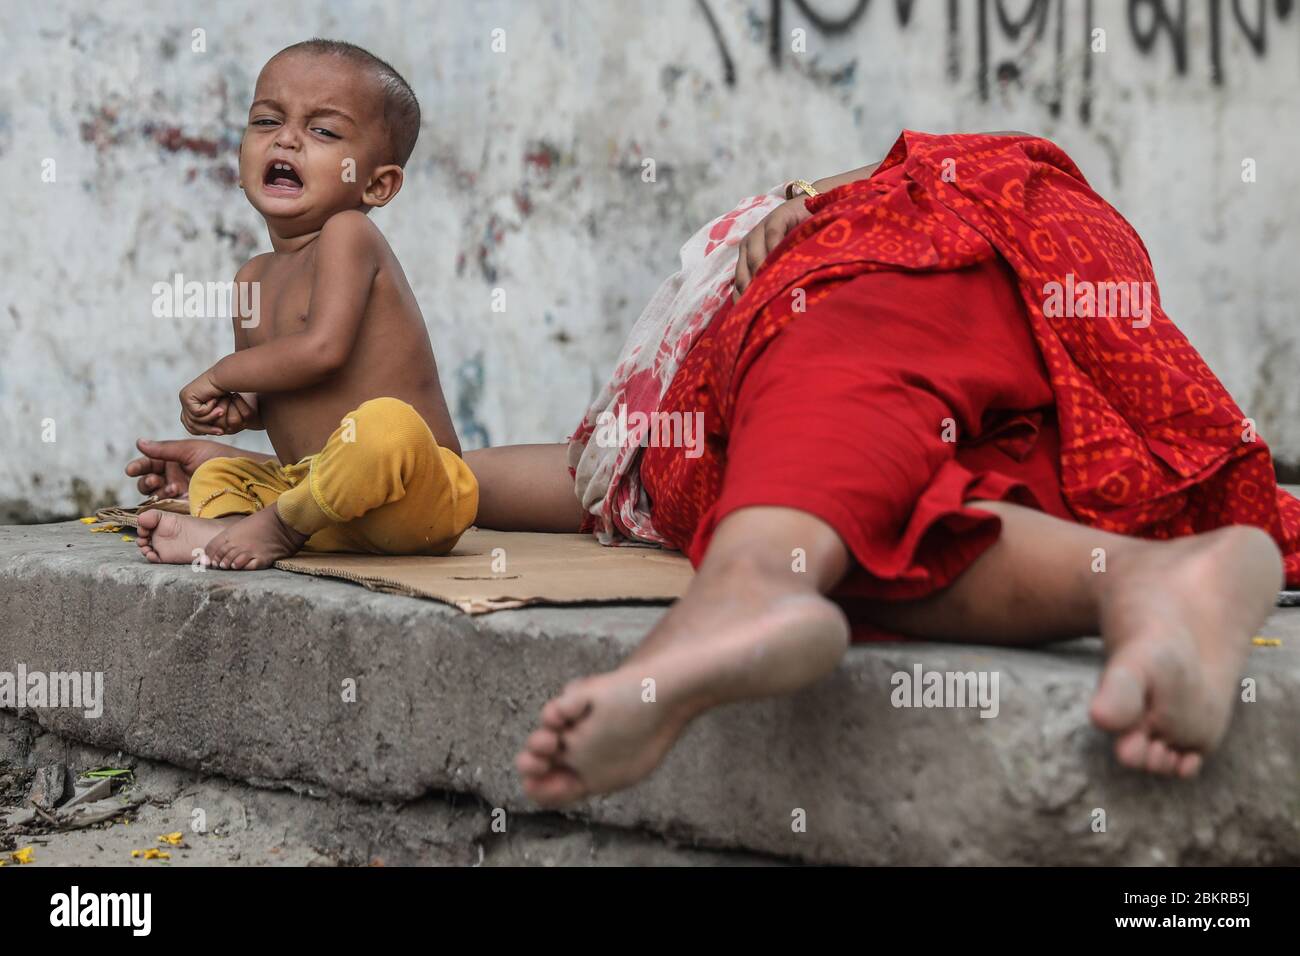 Obdachlose Kinder weinen an der Straße ohne Schutz während der Coronavirus-Krise.Indien Gesundheitsministerium verzeichnete insgesamt 46,476 Infektionen, 1,571 Tod und 12,849 erholt seit Beginn des Ausbruchs. Stockfoto